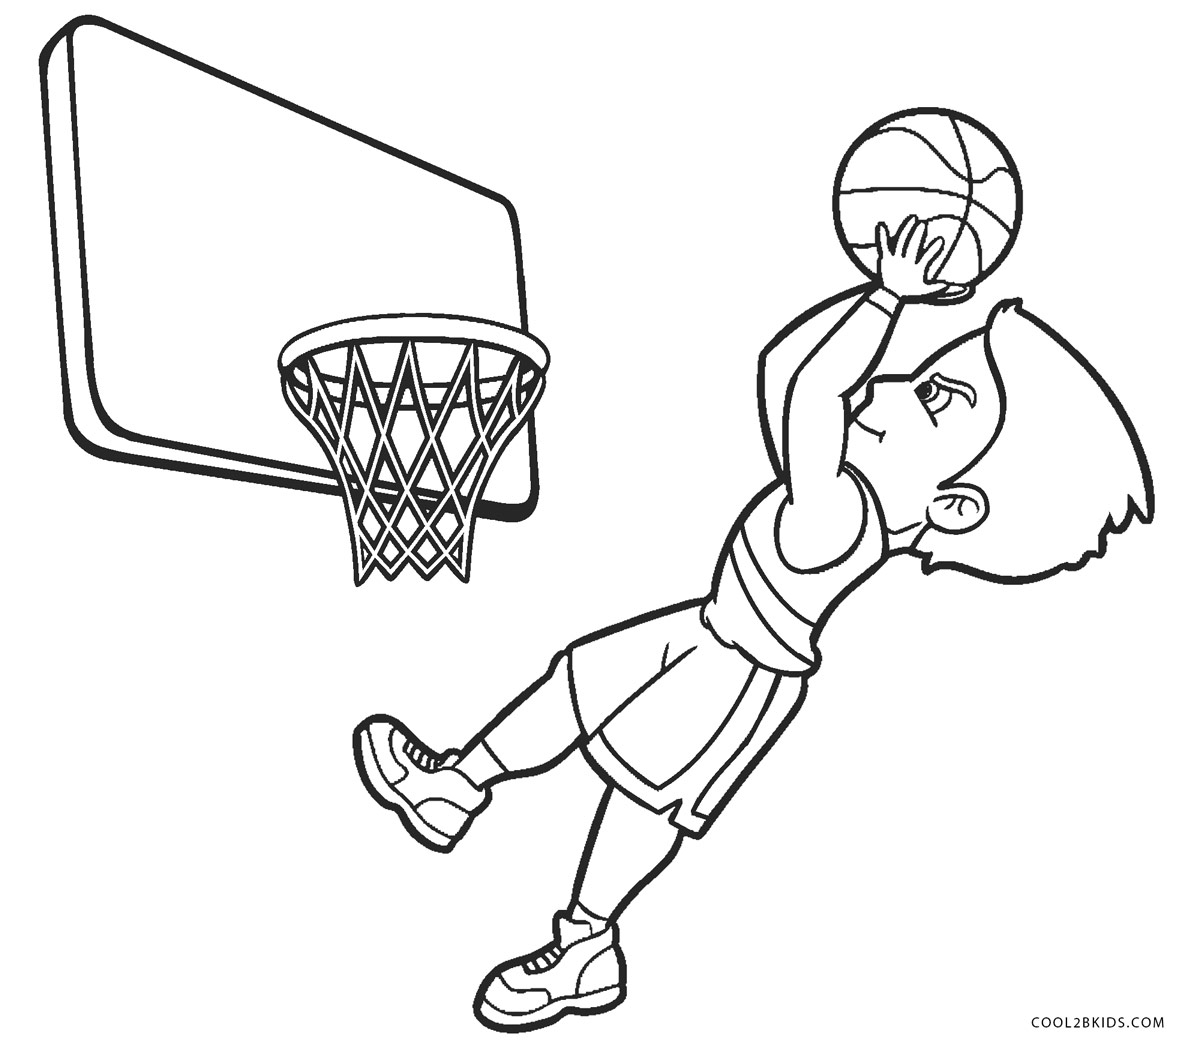 Dibujos de Baloncesto para colorear - Páginas para imprimir gratis